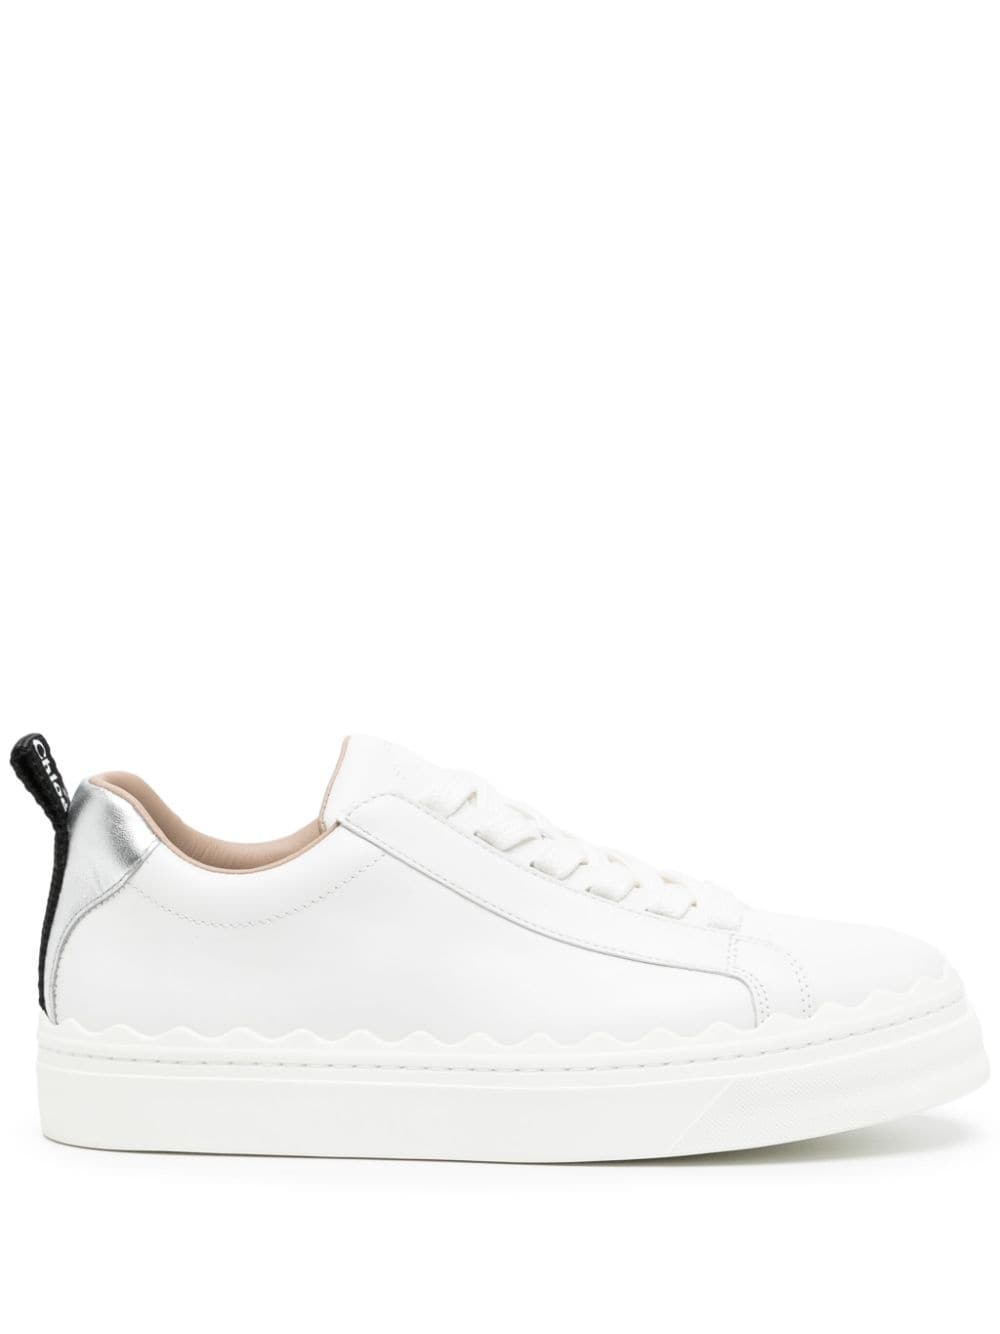 Chloé Lauren leather sneakers - White von Chloé